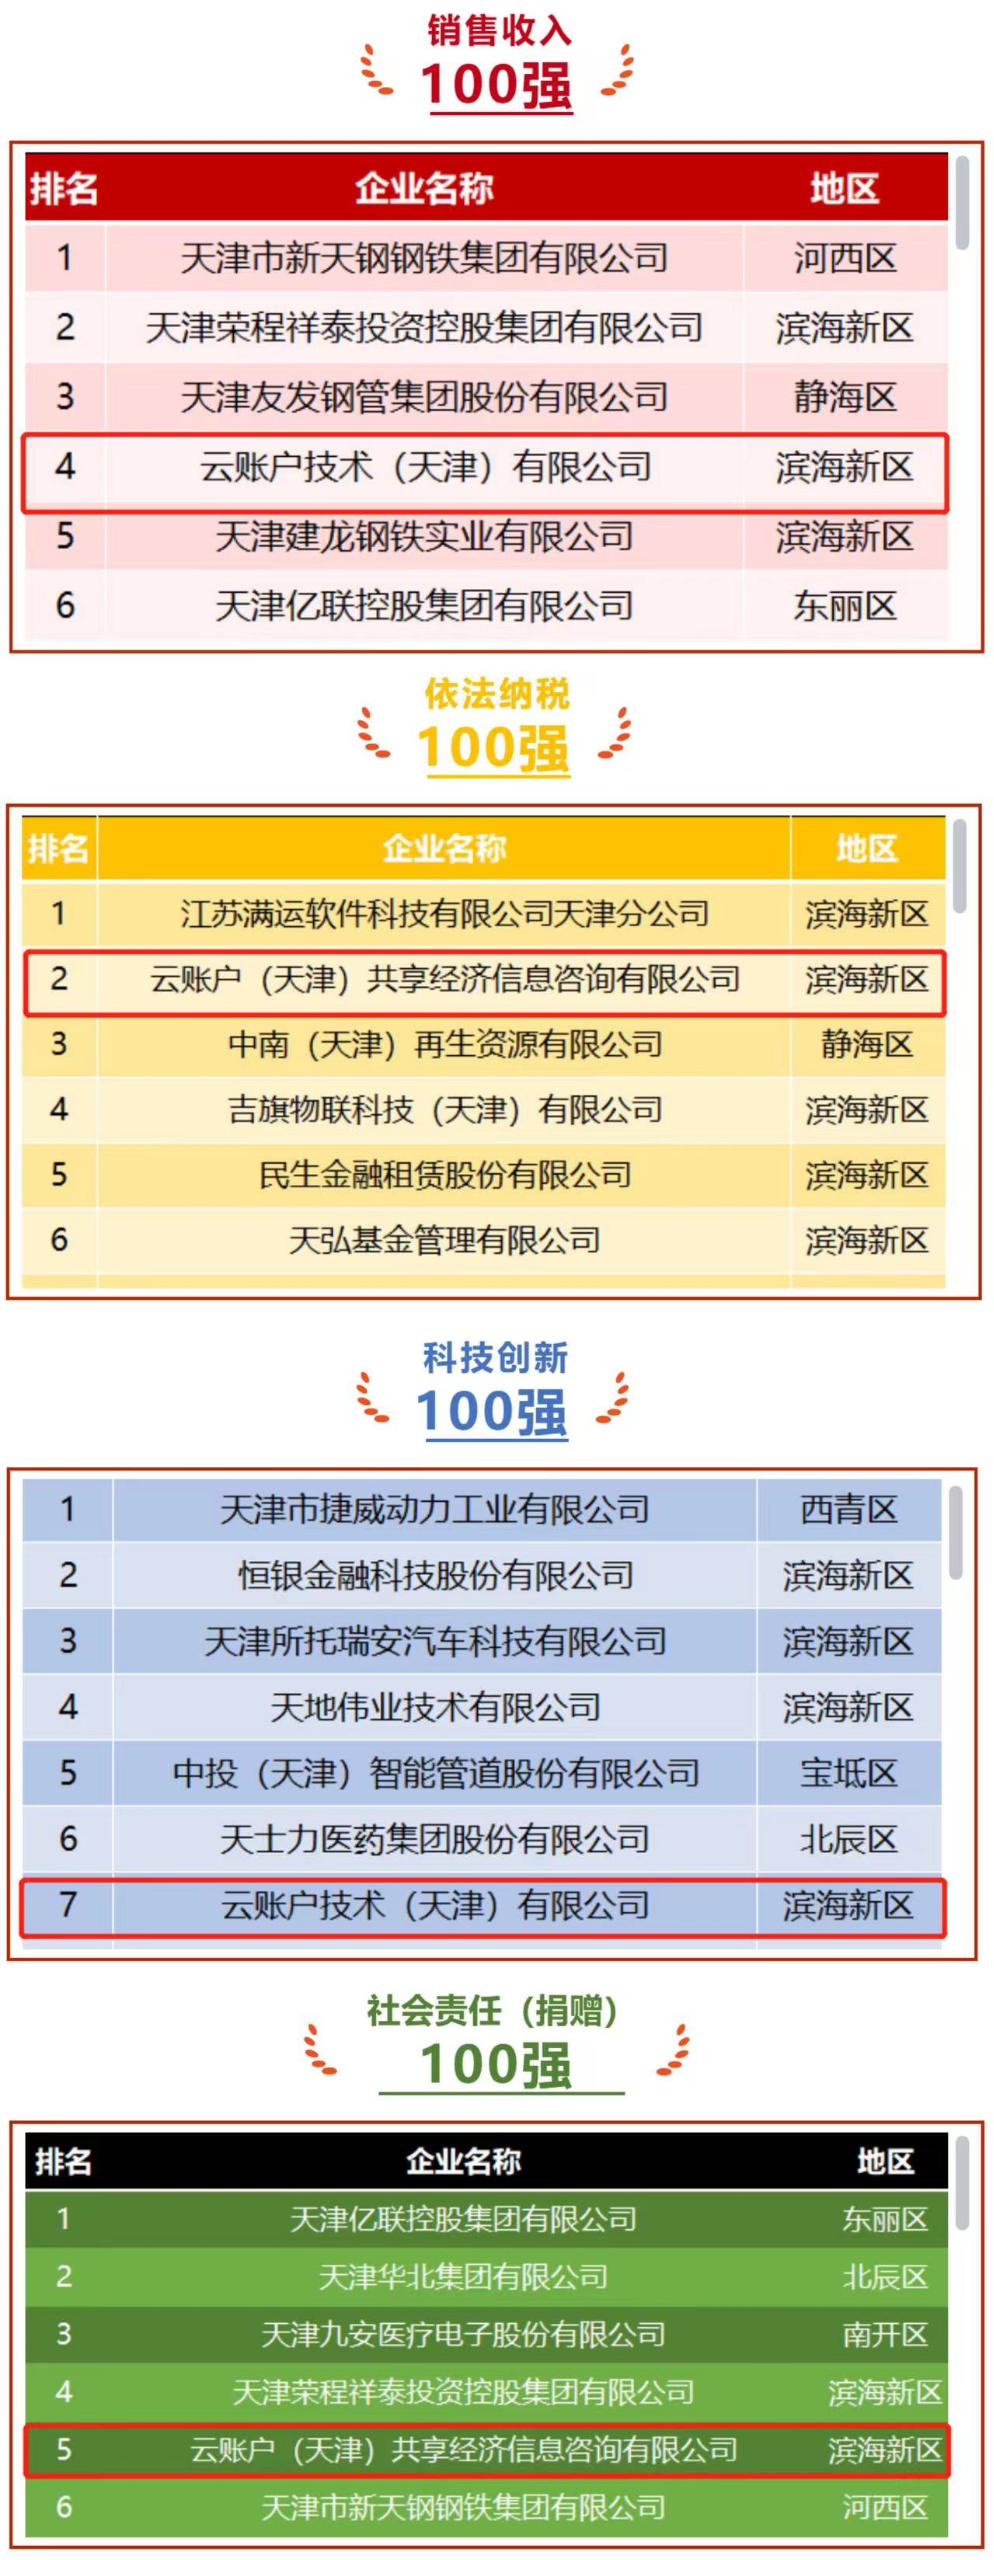 云账户荣列2022天津市民营企业销售收入100强第4位、依法纳税100强第2位